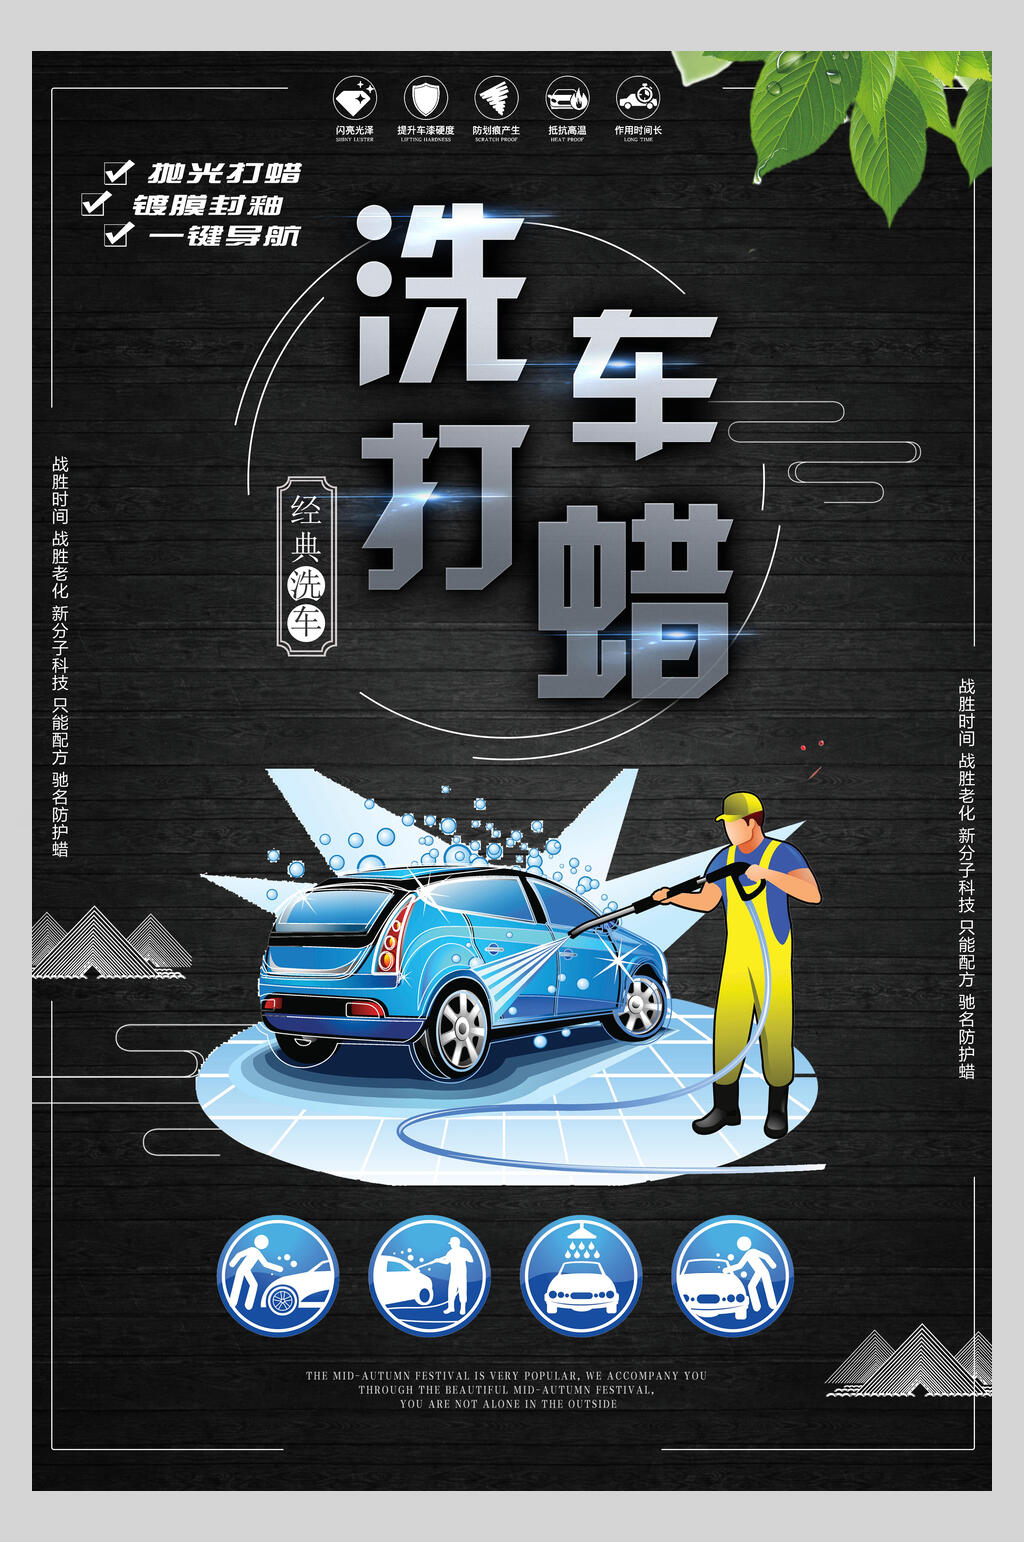 打蜡汽车保养海报素材免费下载,本作品是由你好上传的原创平面广告